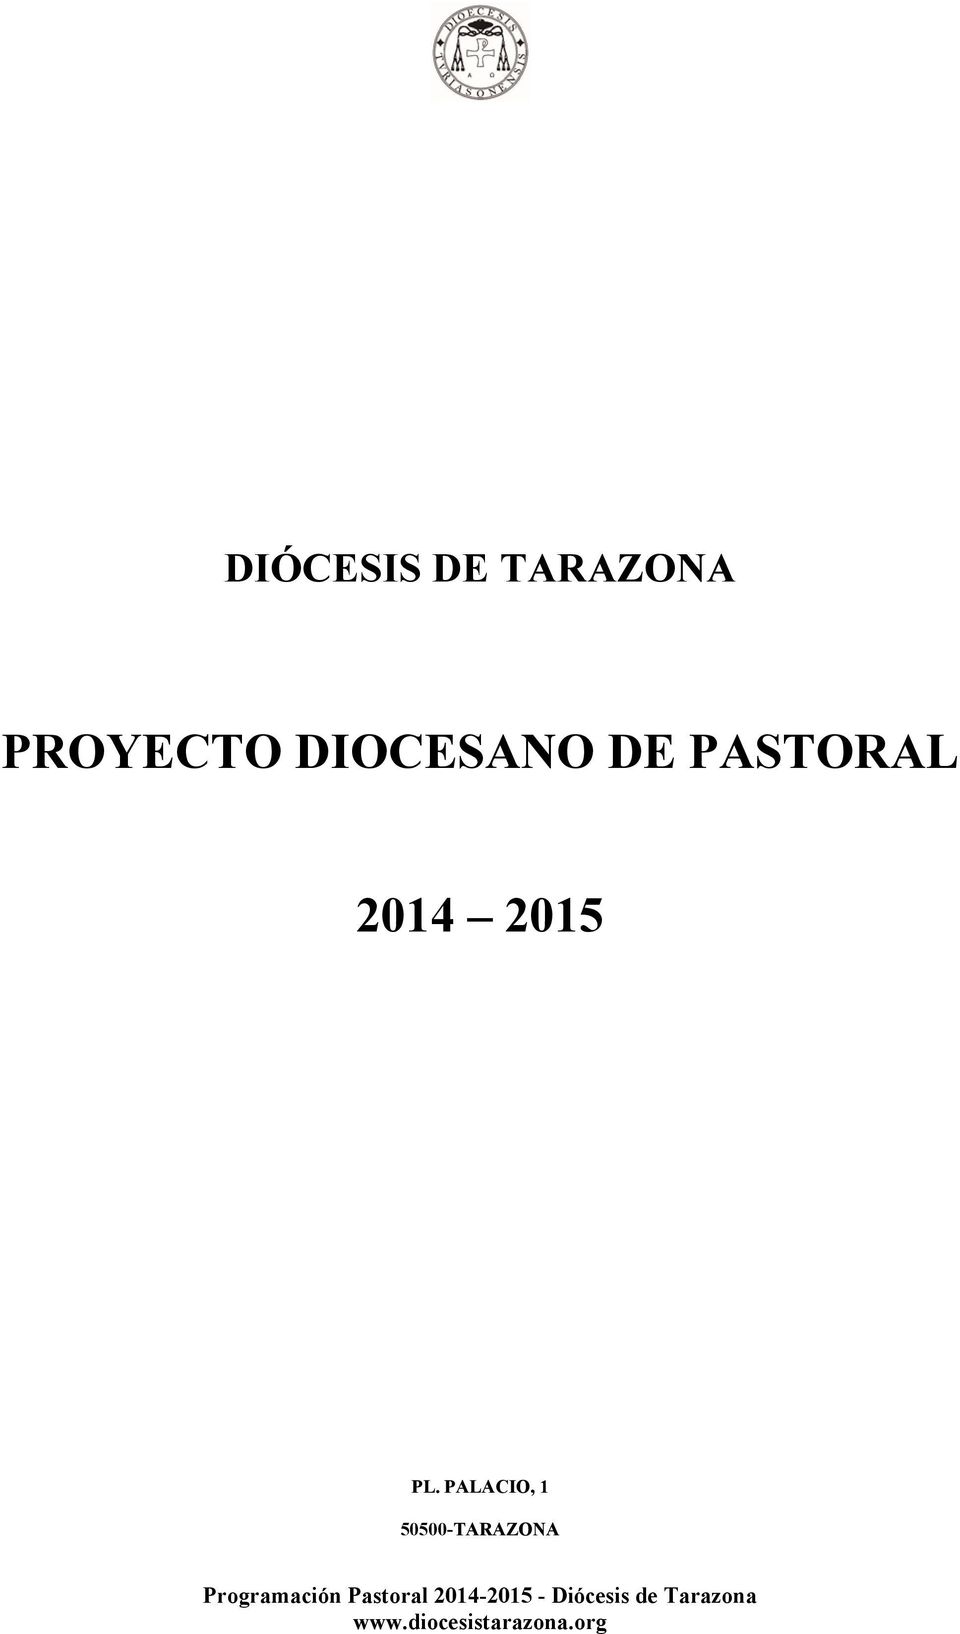 DIOCESANO E PASTORAL 2014-2015